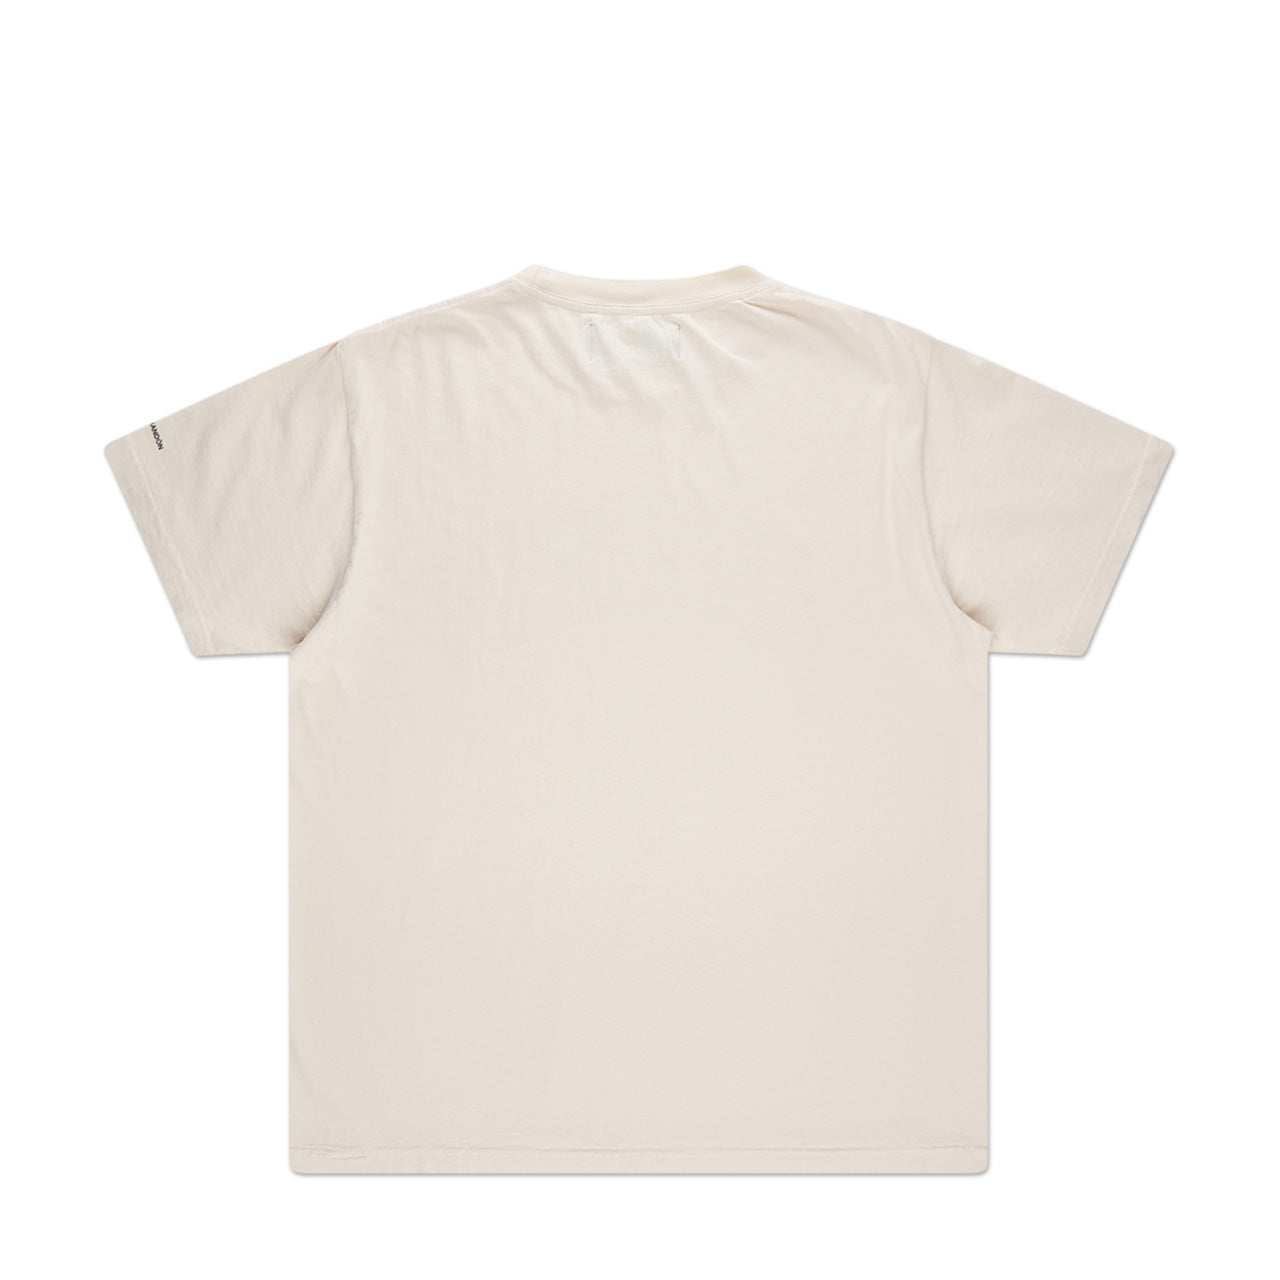 bianca chandôn anxiety t-shirt (creme)